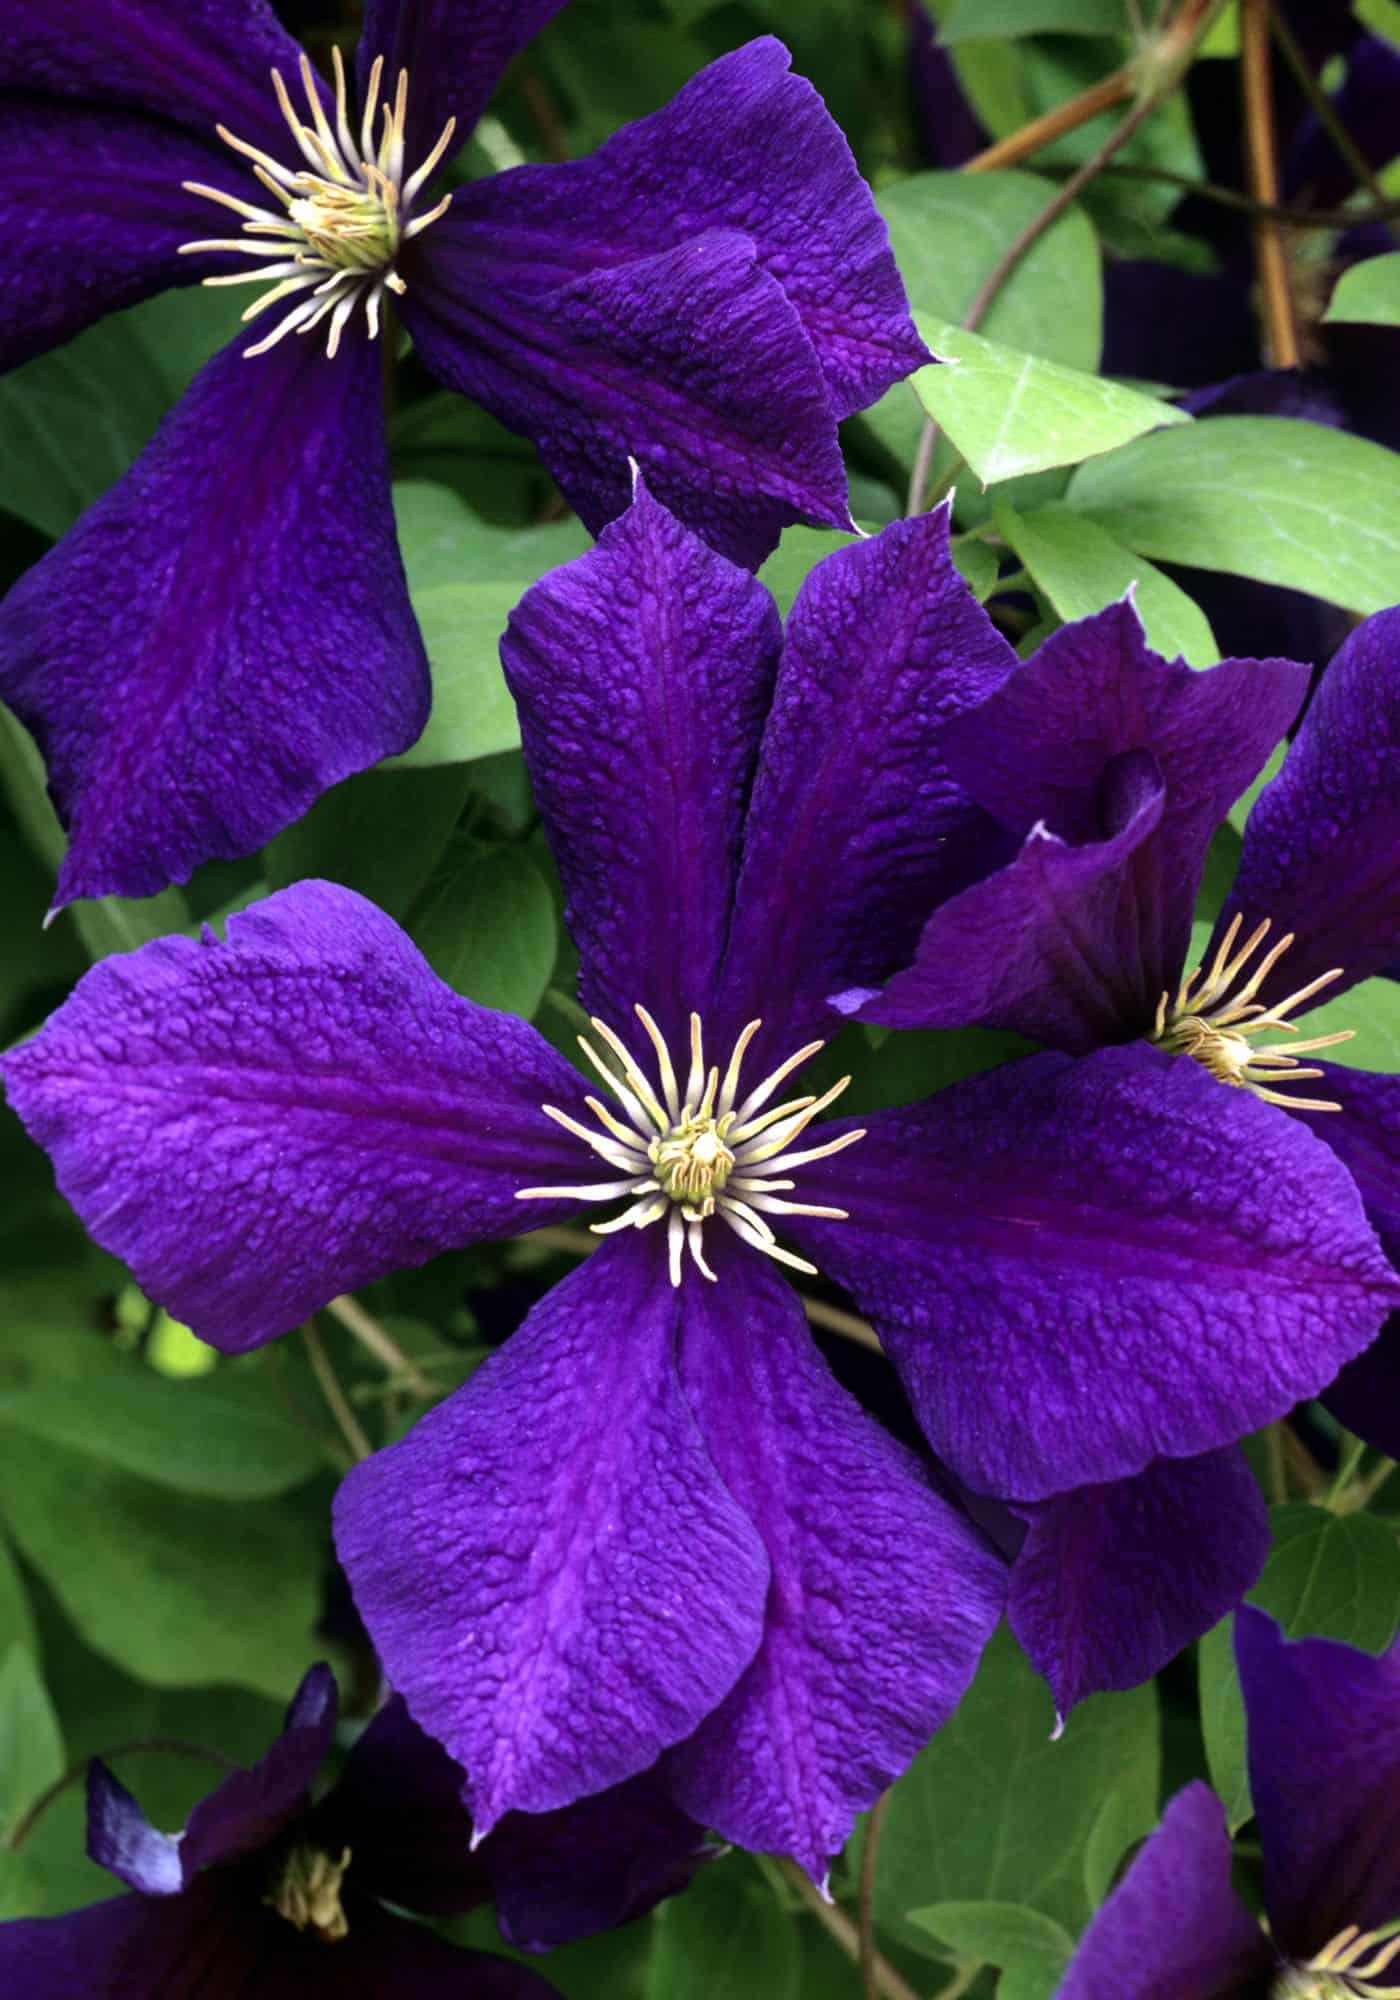 Classic dark purple clematis